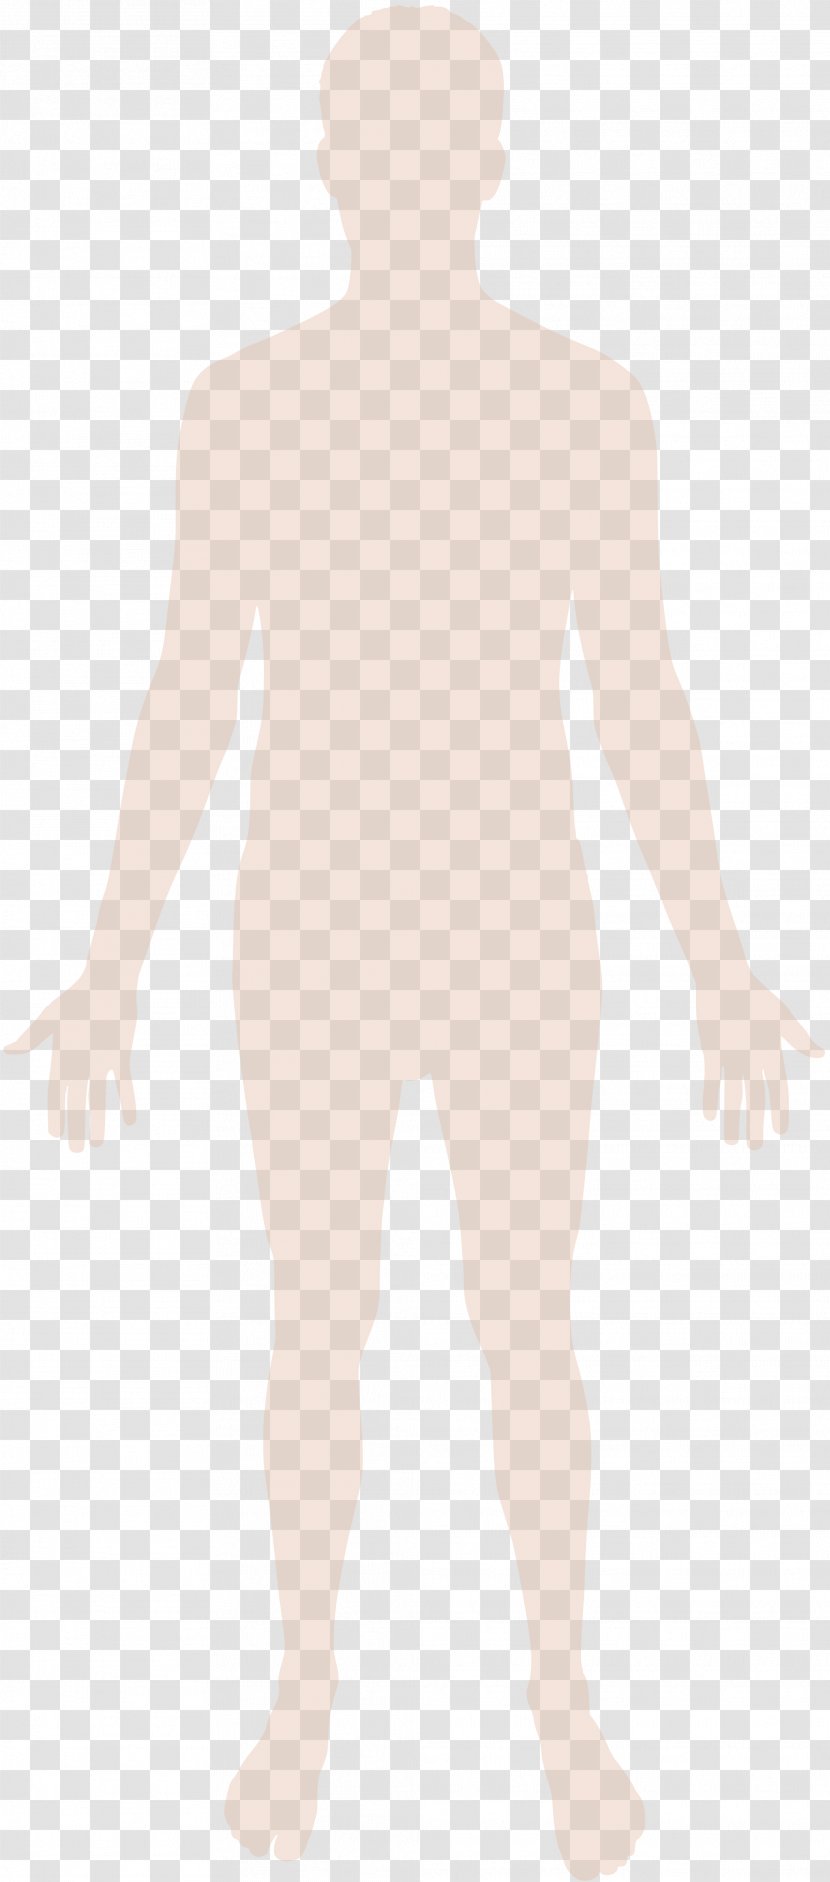 Human Body Homo Sapiens Hand - Frame - Silhouette Transparent PNG